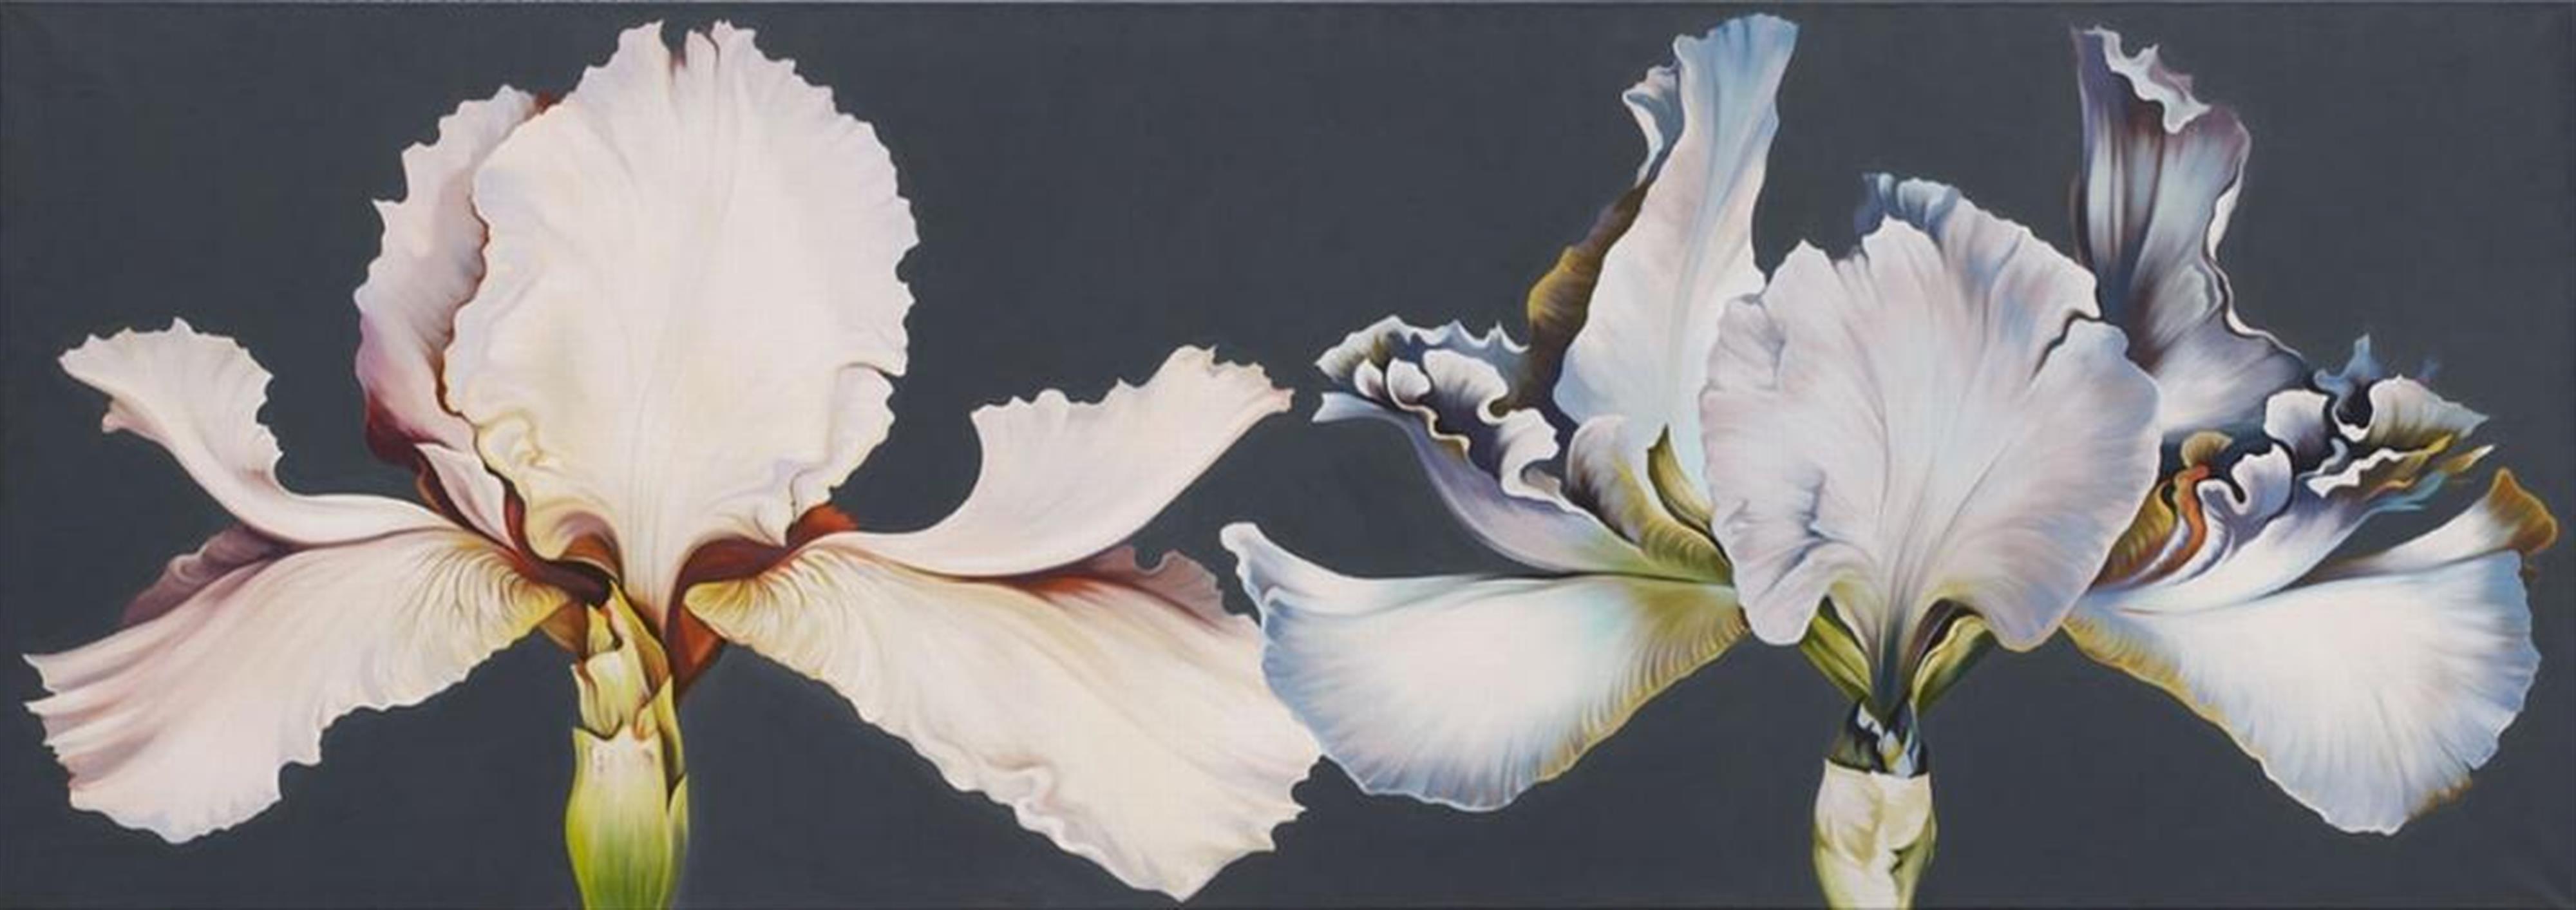 Lowell Nesbitt - Double Iris Painting - image-1